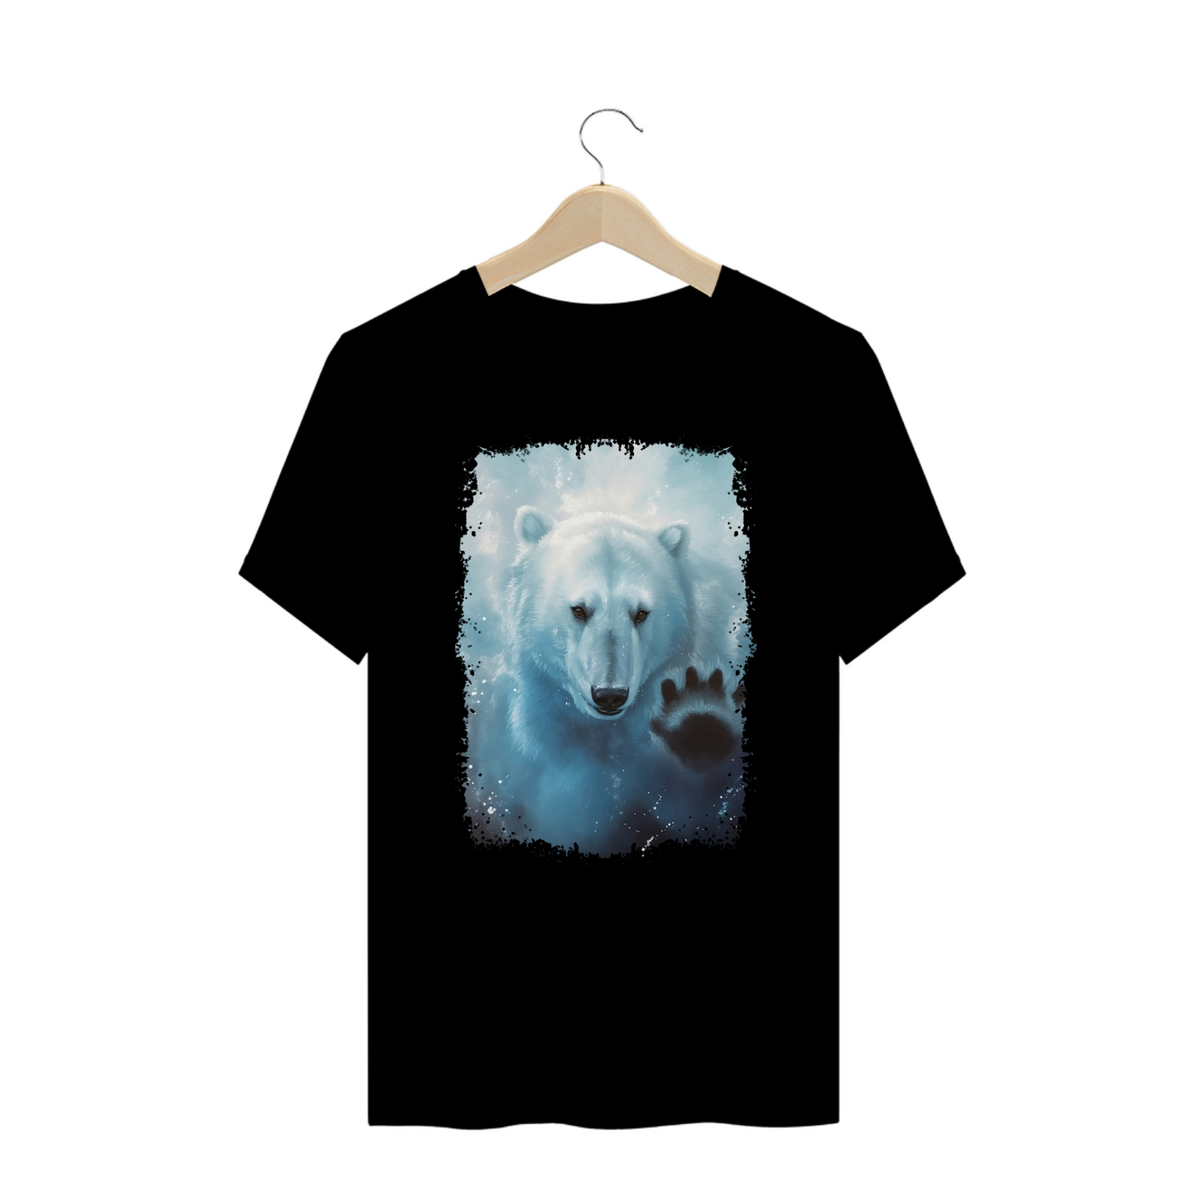 Nome do produto: Polar Bear in the Water - Plus Size